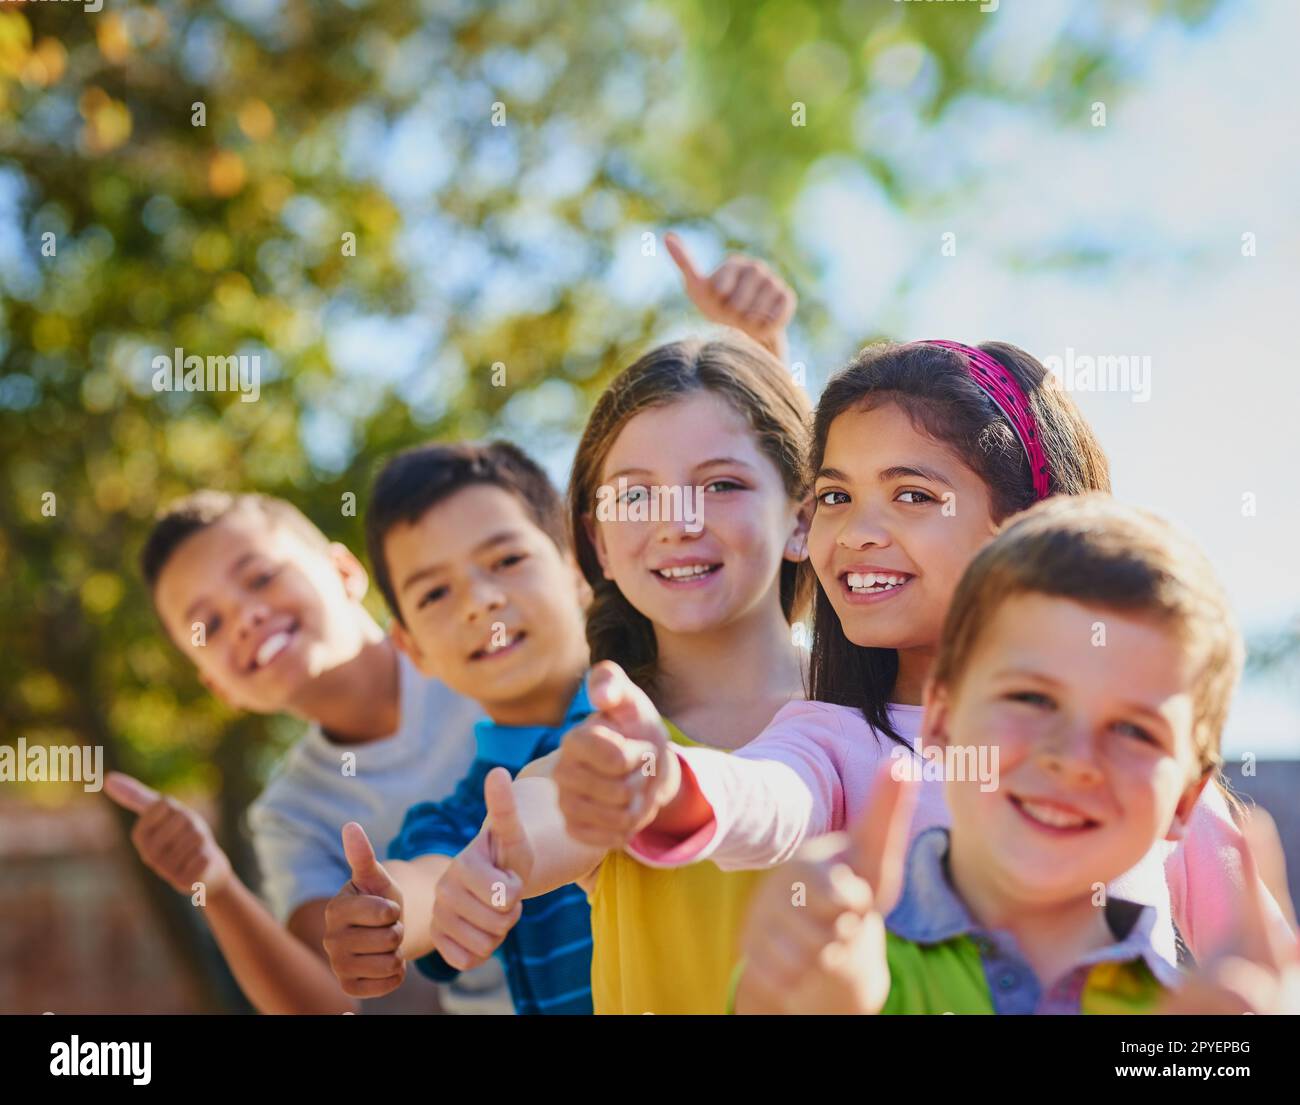 Daumen hoch, um Spaß zu haben. Eine vielfältige Gruppe von Kindern, die draußen Daumen nach oben zeigen. Stockfoto